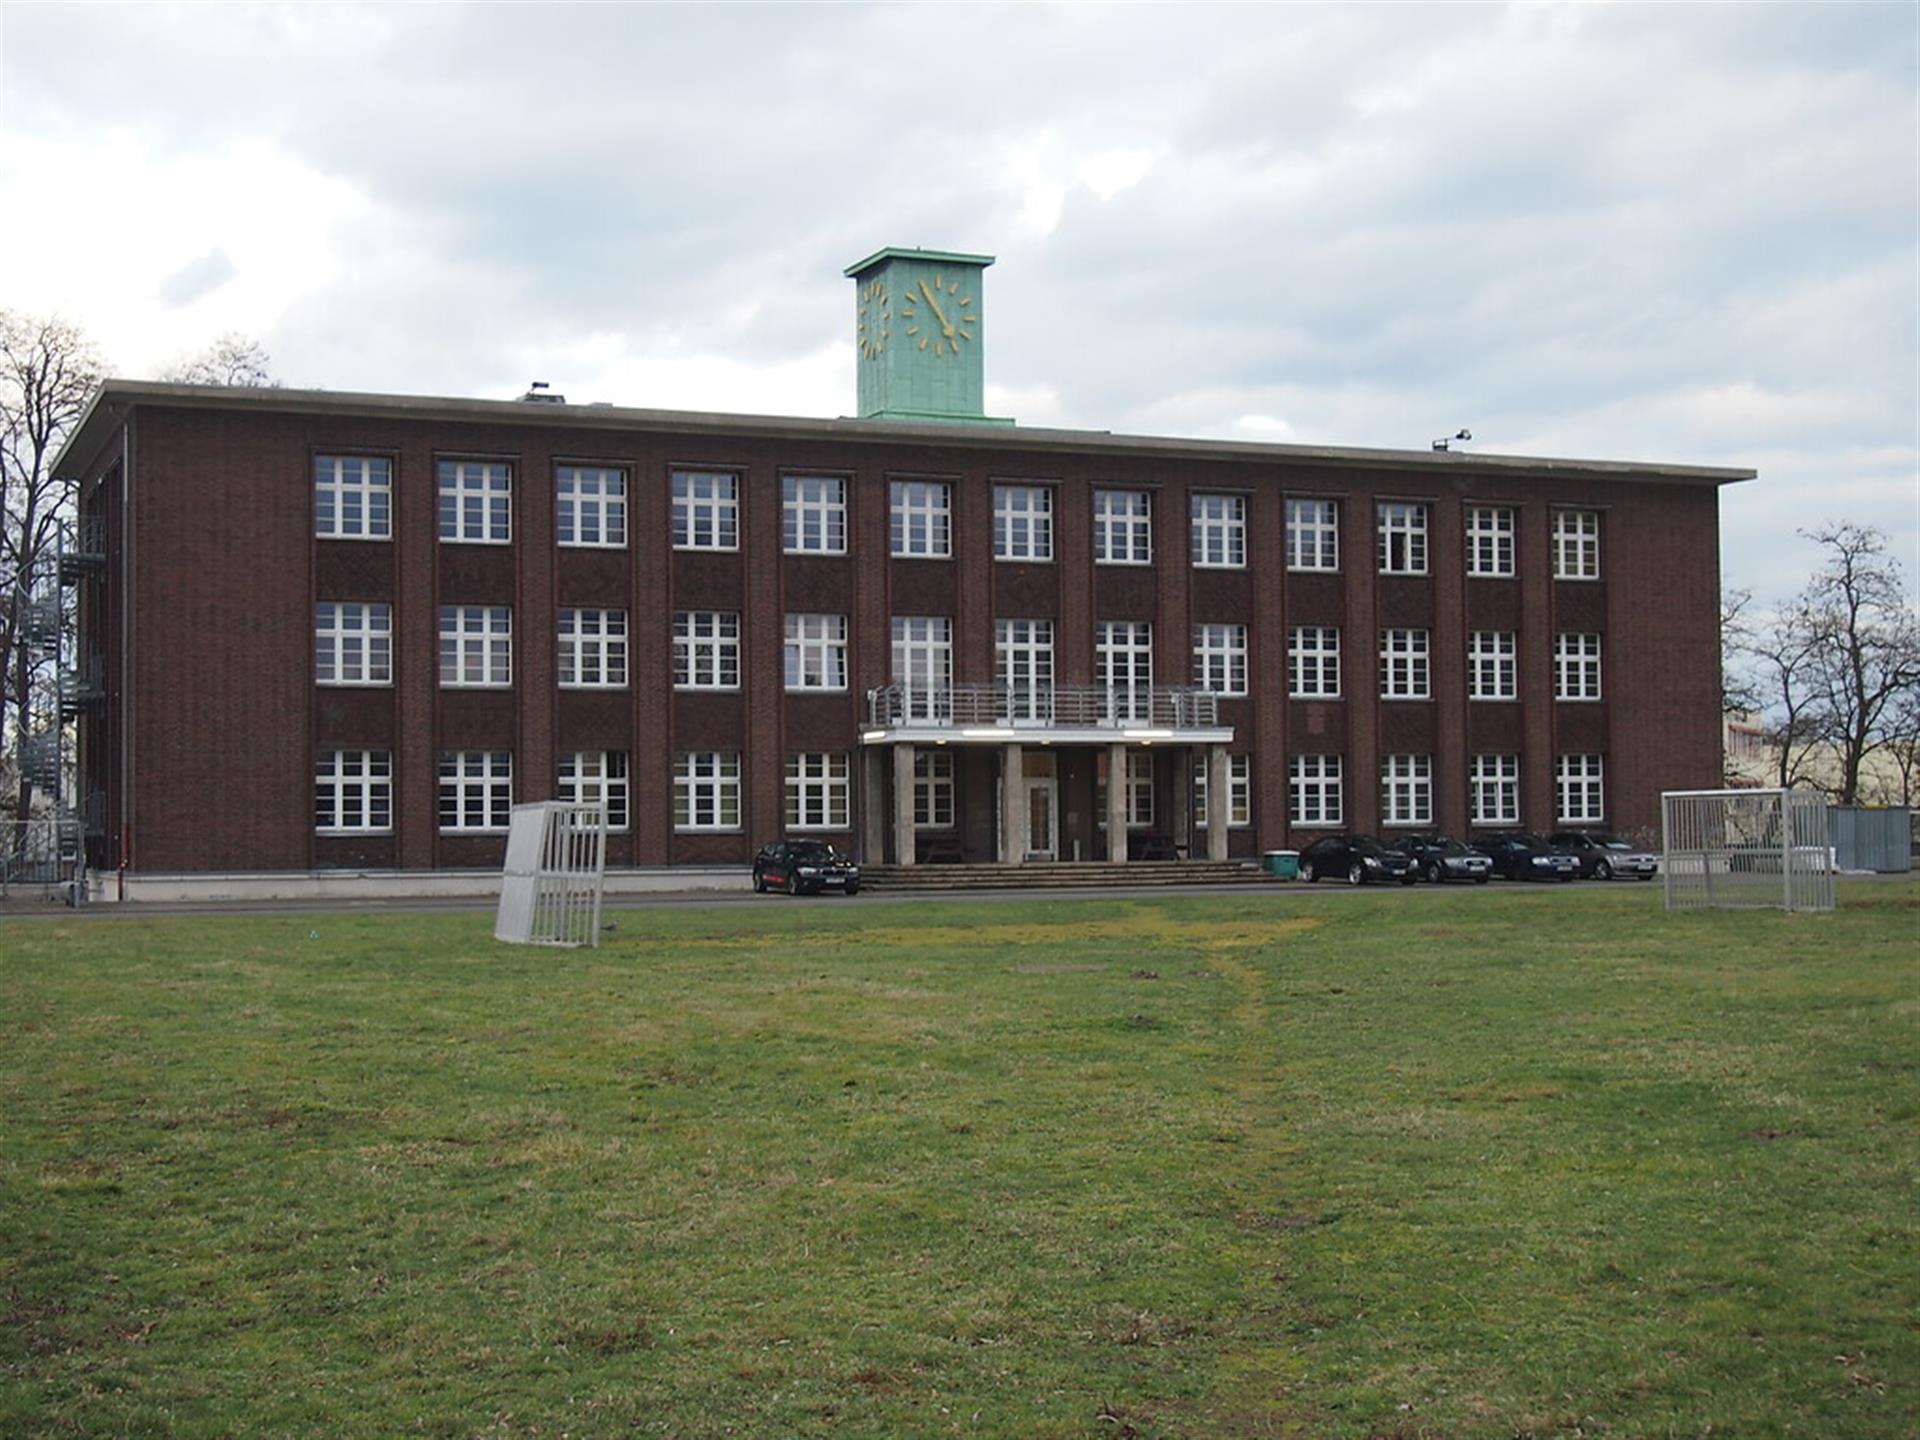 Erhaltenes Gebäudes des Kunstseidekonzern Courtaulds in Niehl (2021). &copy; Julian Weller / CC BY 4.0